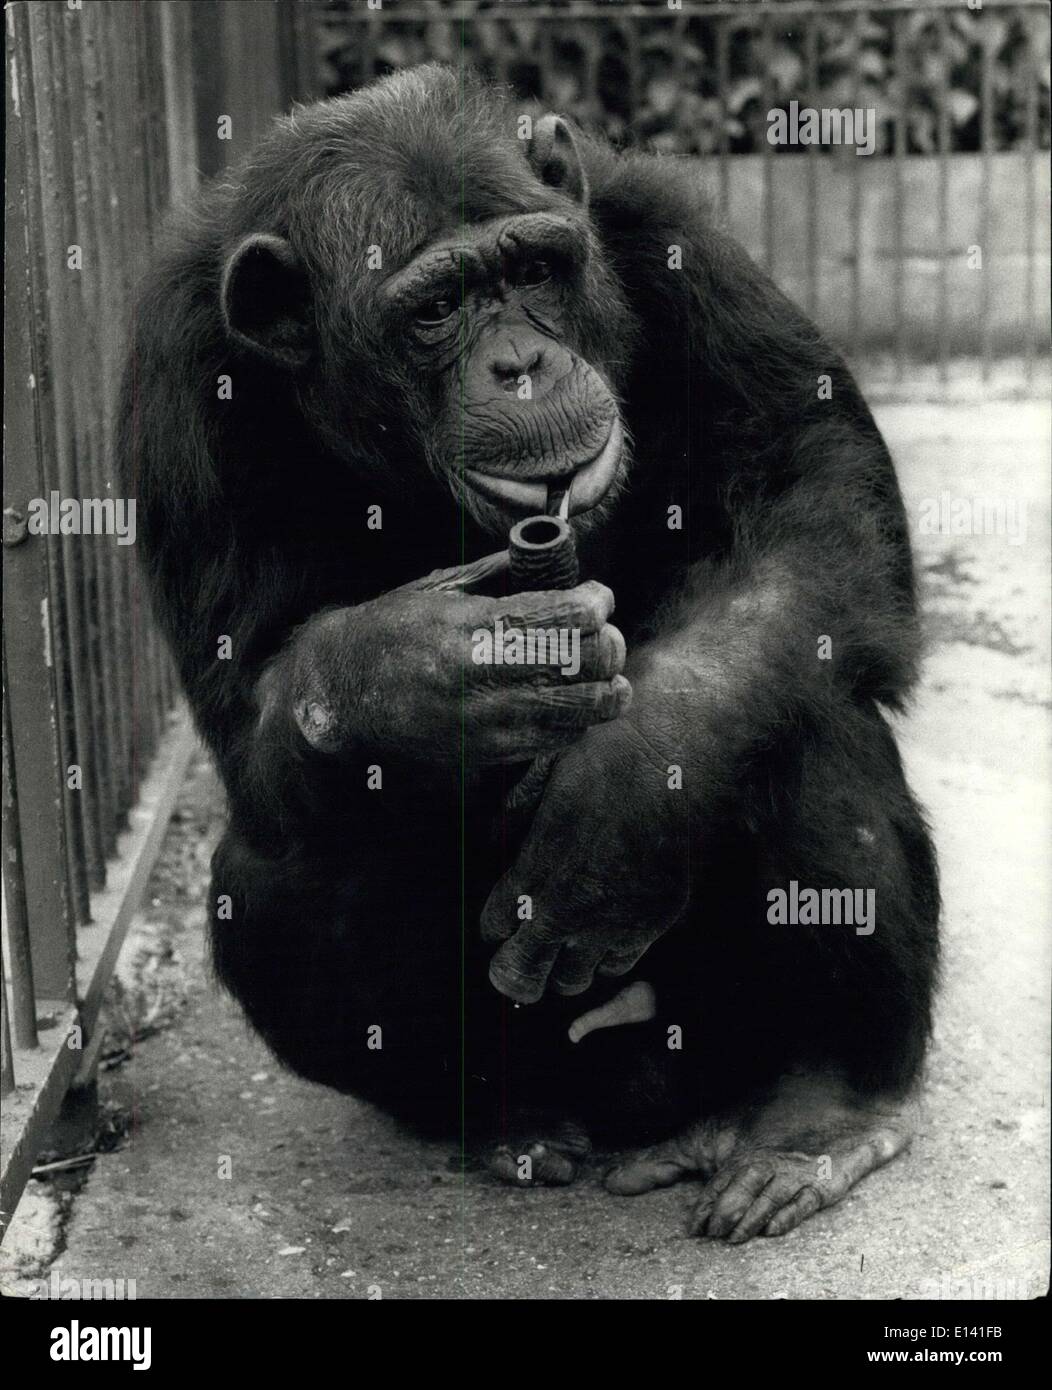 31. März 2012 - A-Rohr ist des Menschen bester Freund.: Williiam, 20-jährige Schimpanse im Zoo von Cromer, ist seit fast fünfzehn Jahren ein Rohr Mann. Da die Anti-Raucher-Kampagne Stärke in den letzten Jahren gewonnen hat, Zoo Inhaber Frau Olga Kerr, getan hat ihr gutfunktionierenden entwöhnen seine aus der Gewohnheit, aber bisher ohne viel Erfolg. Ohne seinen besten Kumpel William scheint nur Kiefern- und Bedome eine elende Greis: aber mit seinem Lieblings Holz zwischen den Zähnen, er ist so glücklich wie ein Sand junge! Einmal versuchte er, eine Zigarette, aber als er anfing, die Testversion Aktivitäte recht schnell Essen! Stockfoto